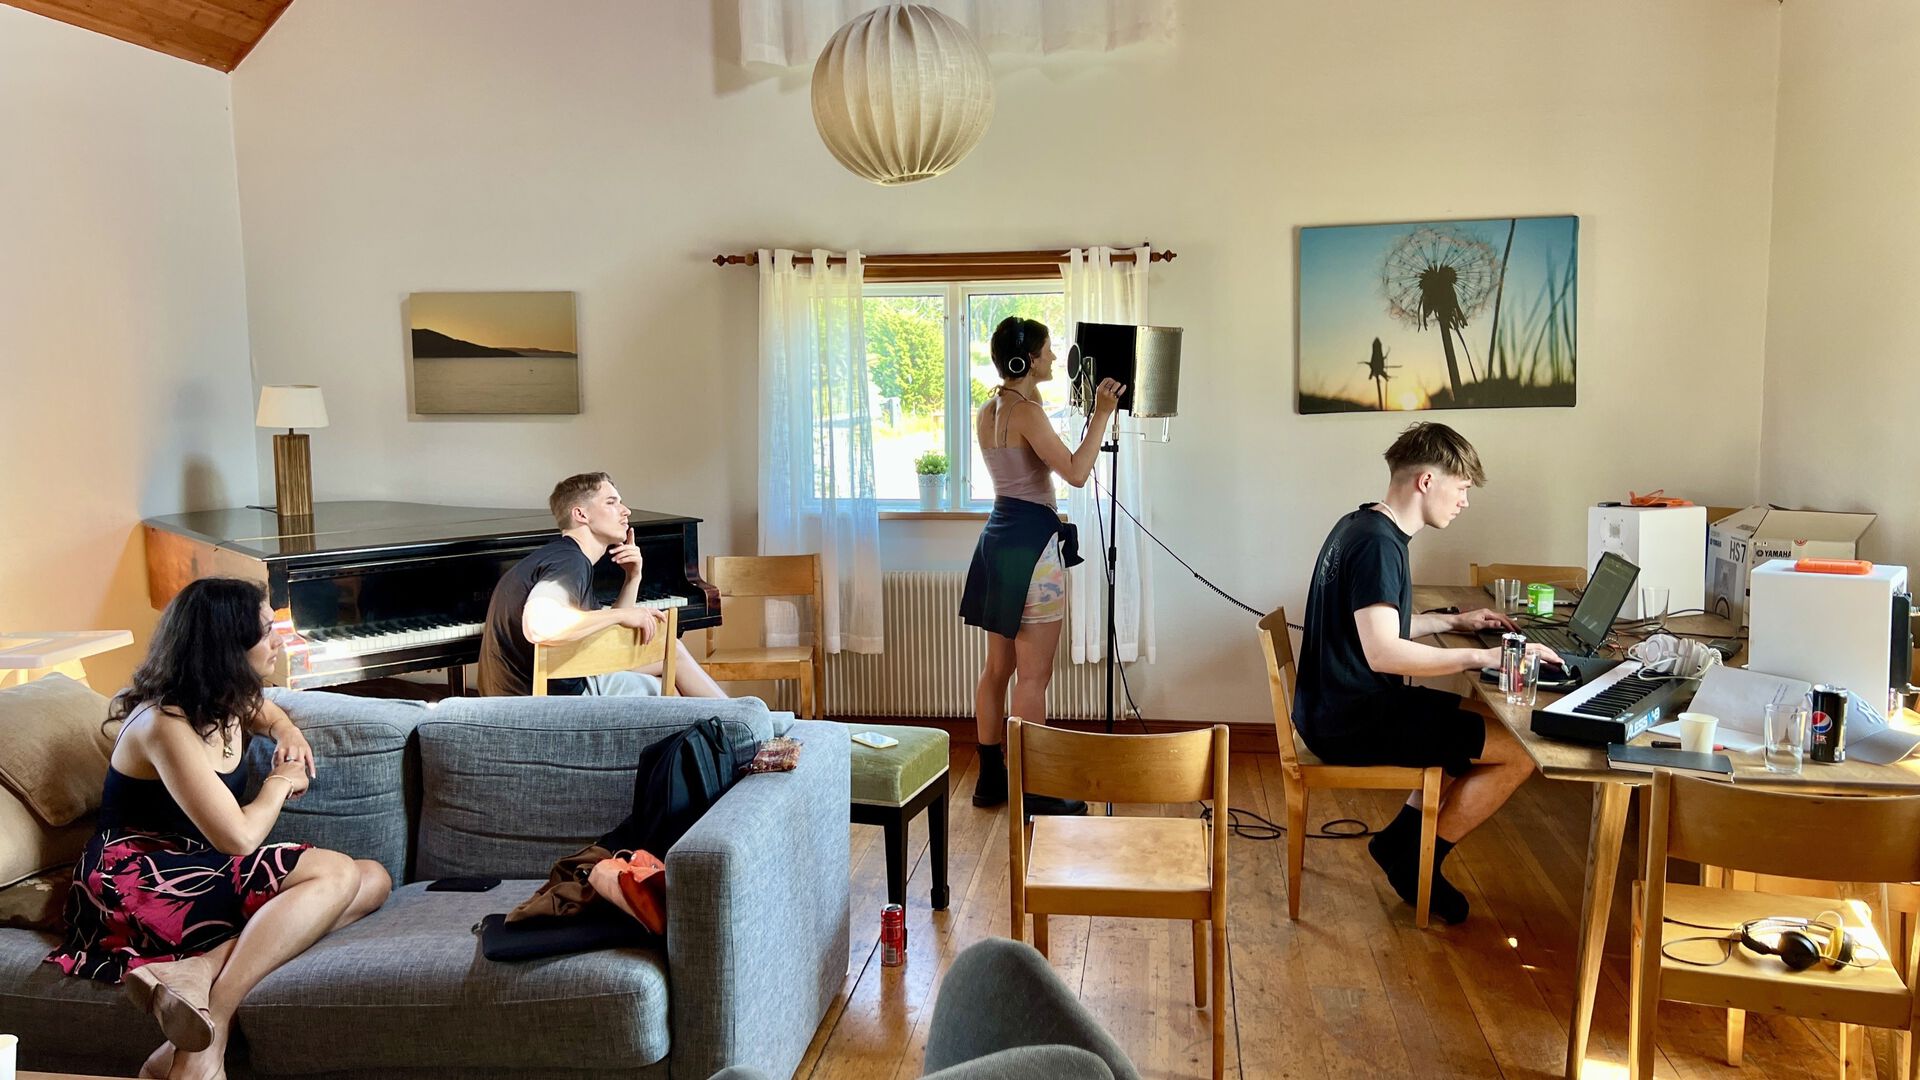 3 personer lager musikk i en stue.